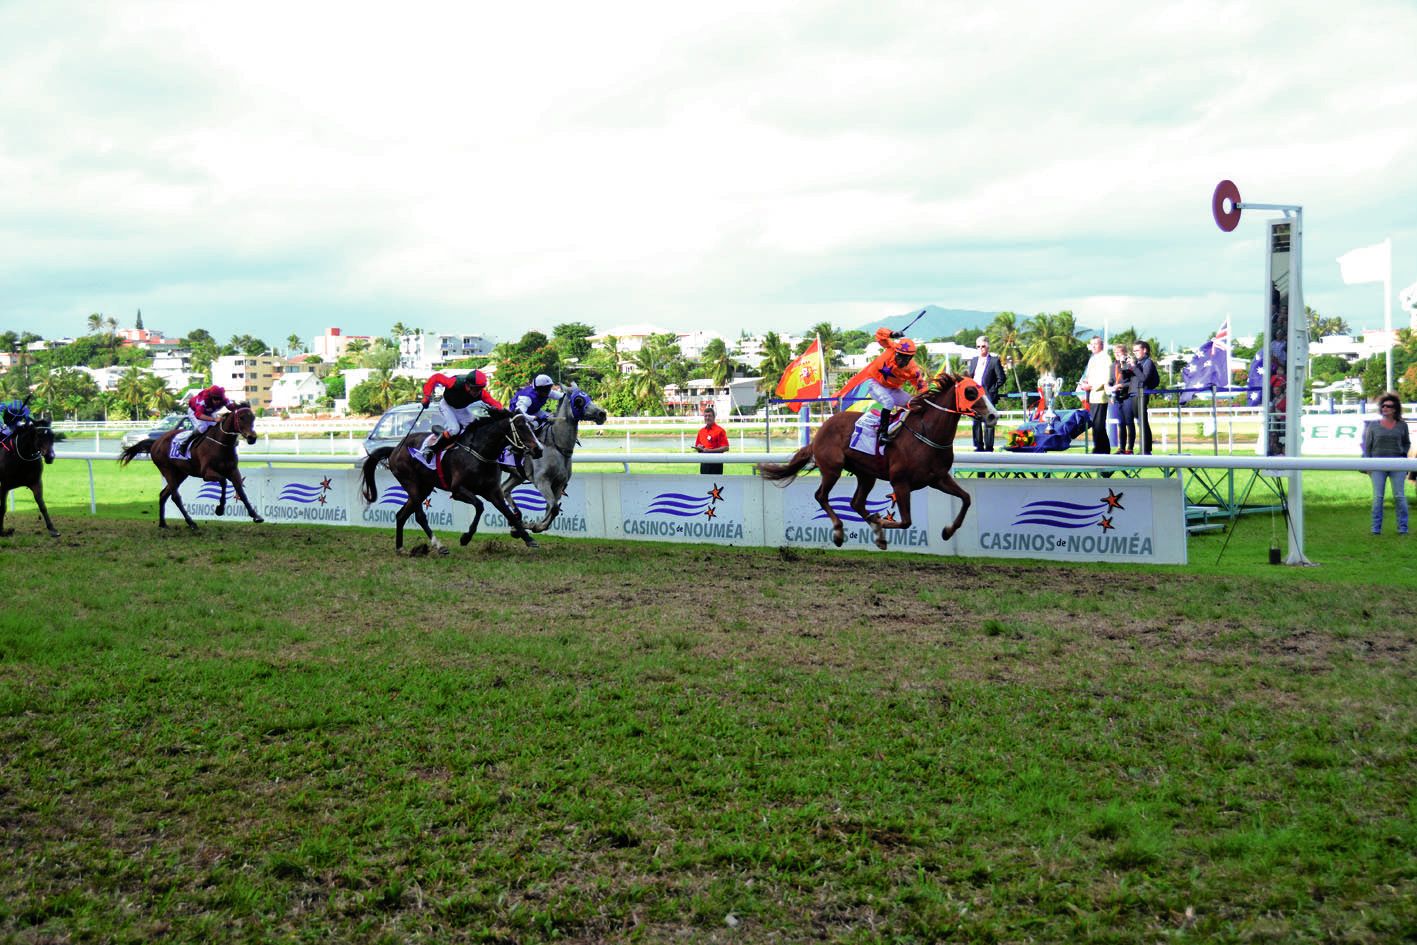 Parmi les 12 chevaux qui s’élanceront dimanche, seul Bounty Star (ici à droite), vainqueur en 2016, a déjà remporté la Coupe Clarke. Archives LNC Sports/G.Caprais